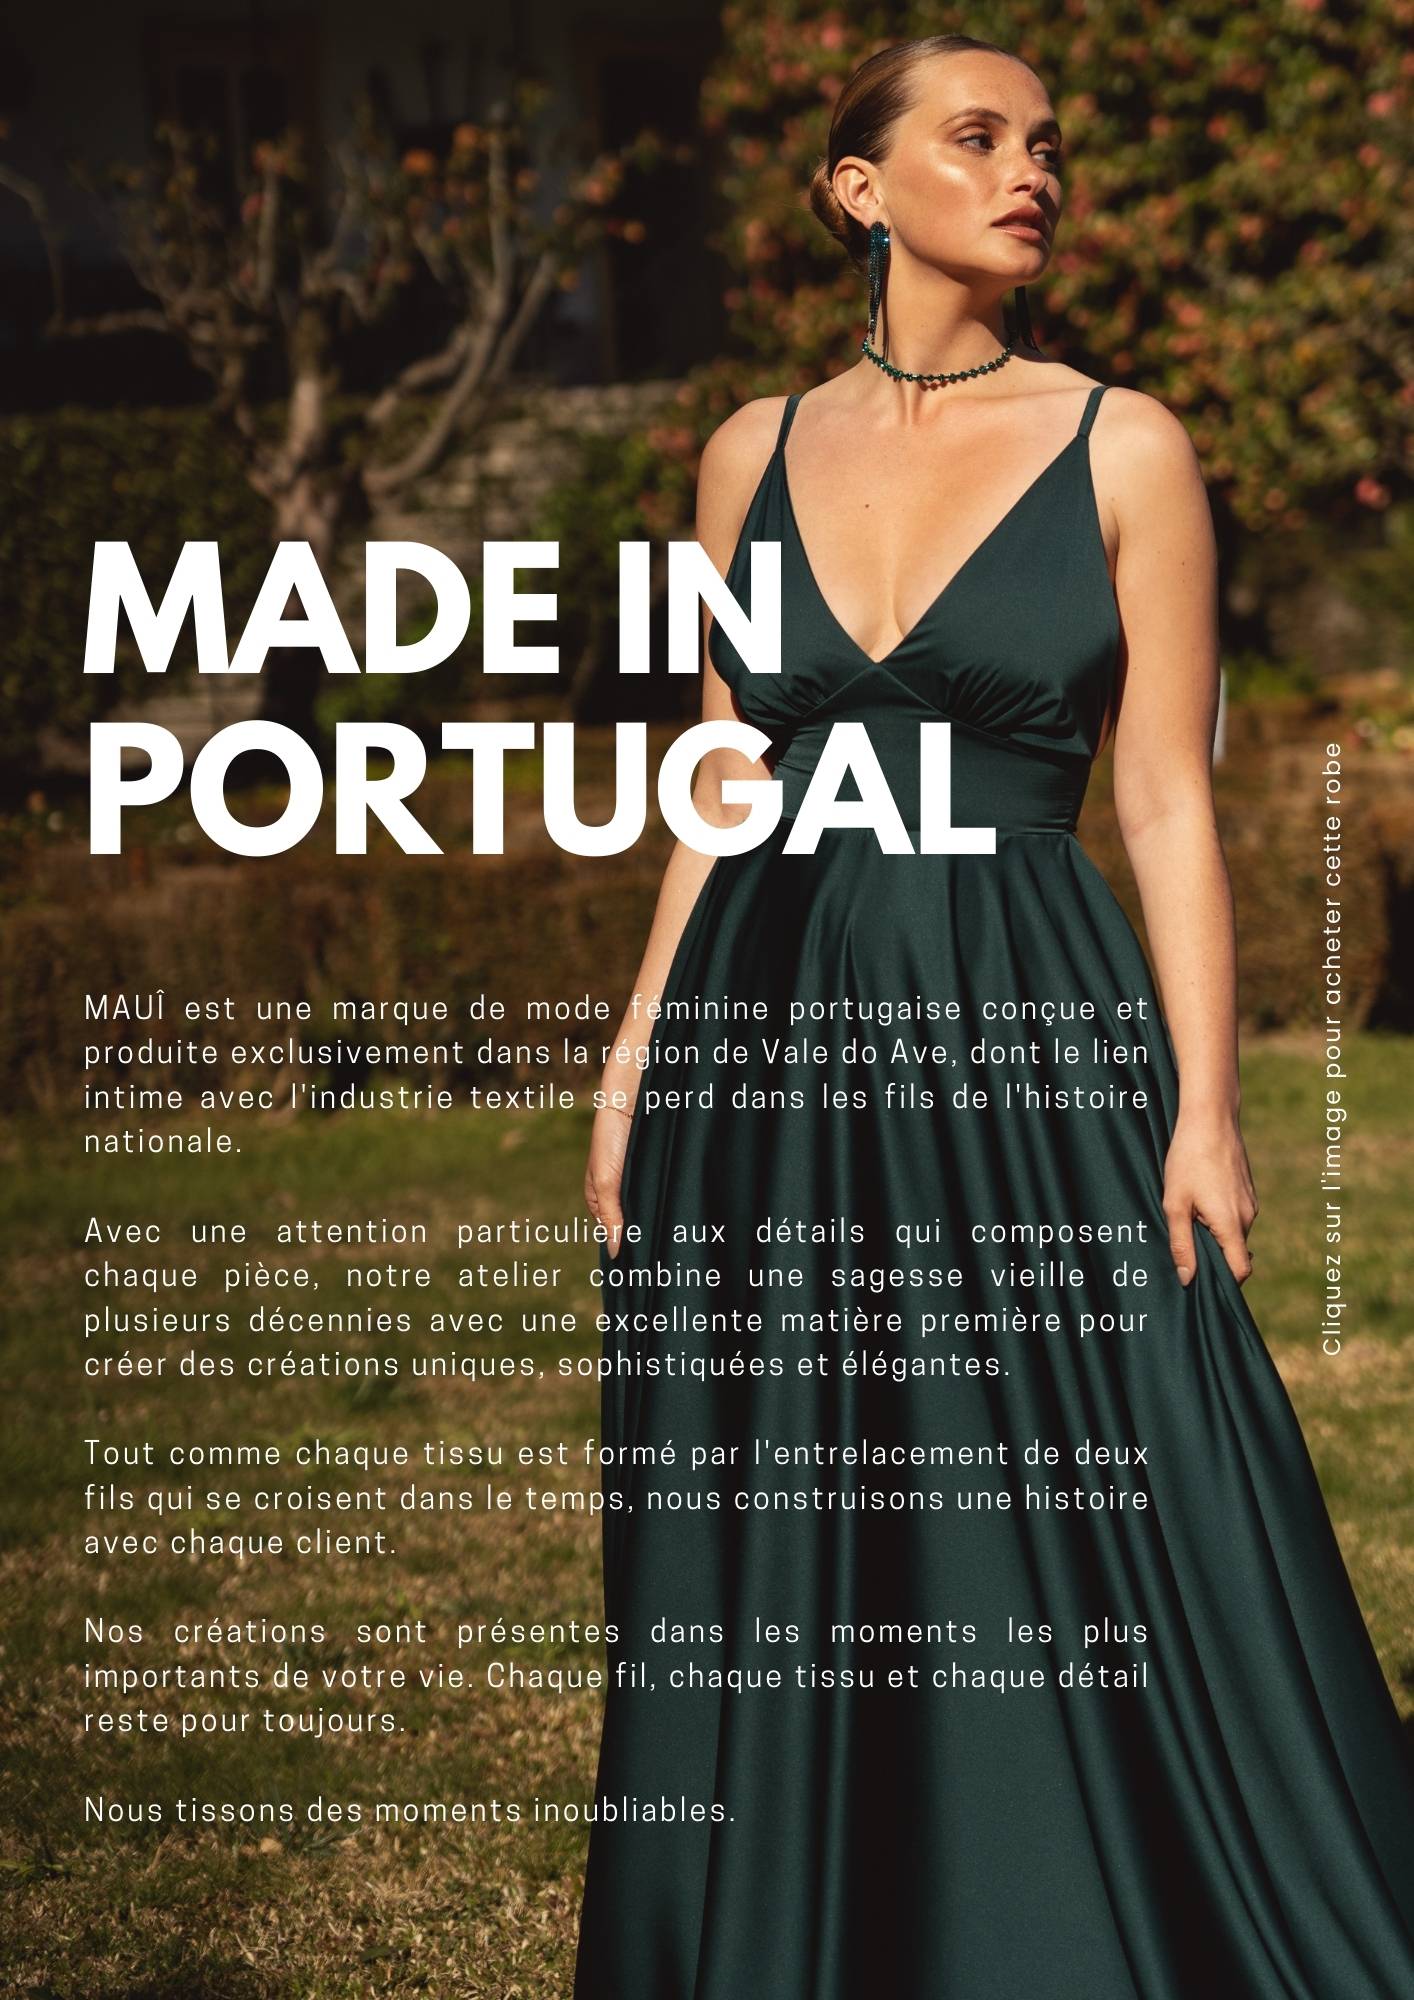 MAUI, robes de soirée, marque 100% portugaise, fait main, haute qualité, couleurs personnalisées, expédition rapide, mode féminine, durable